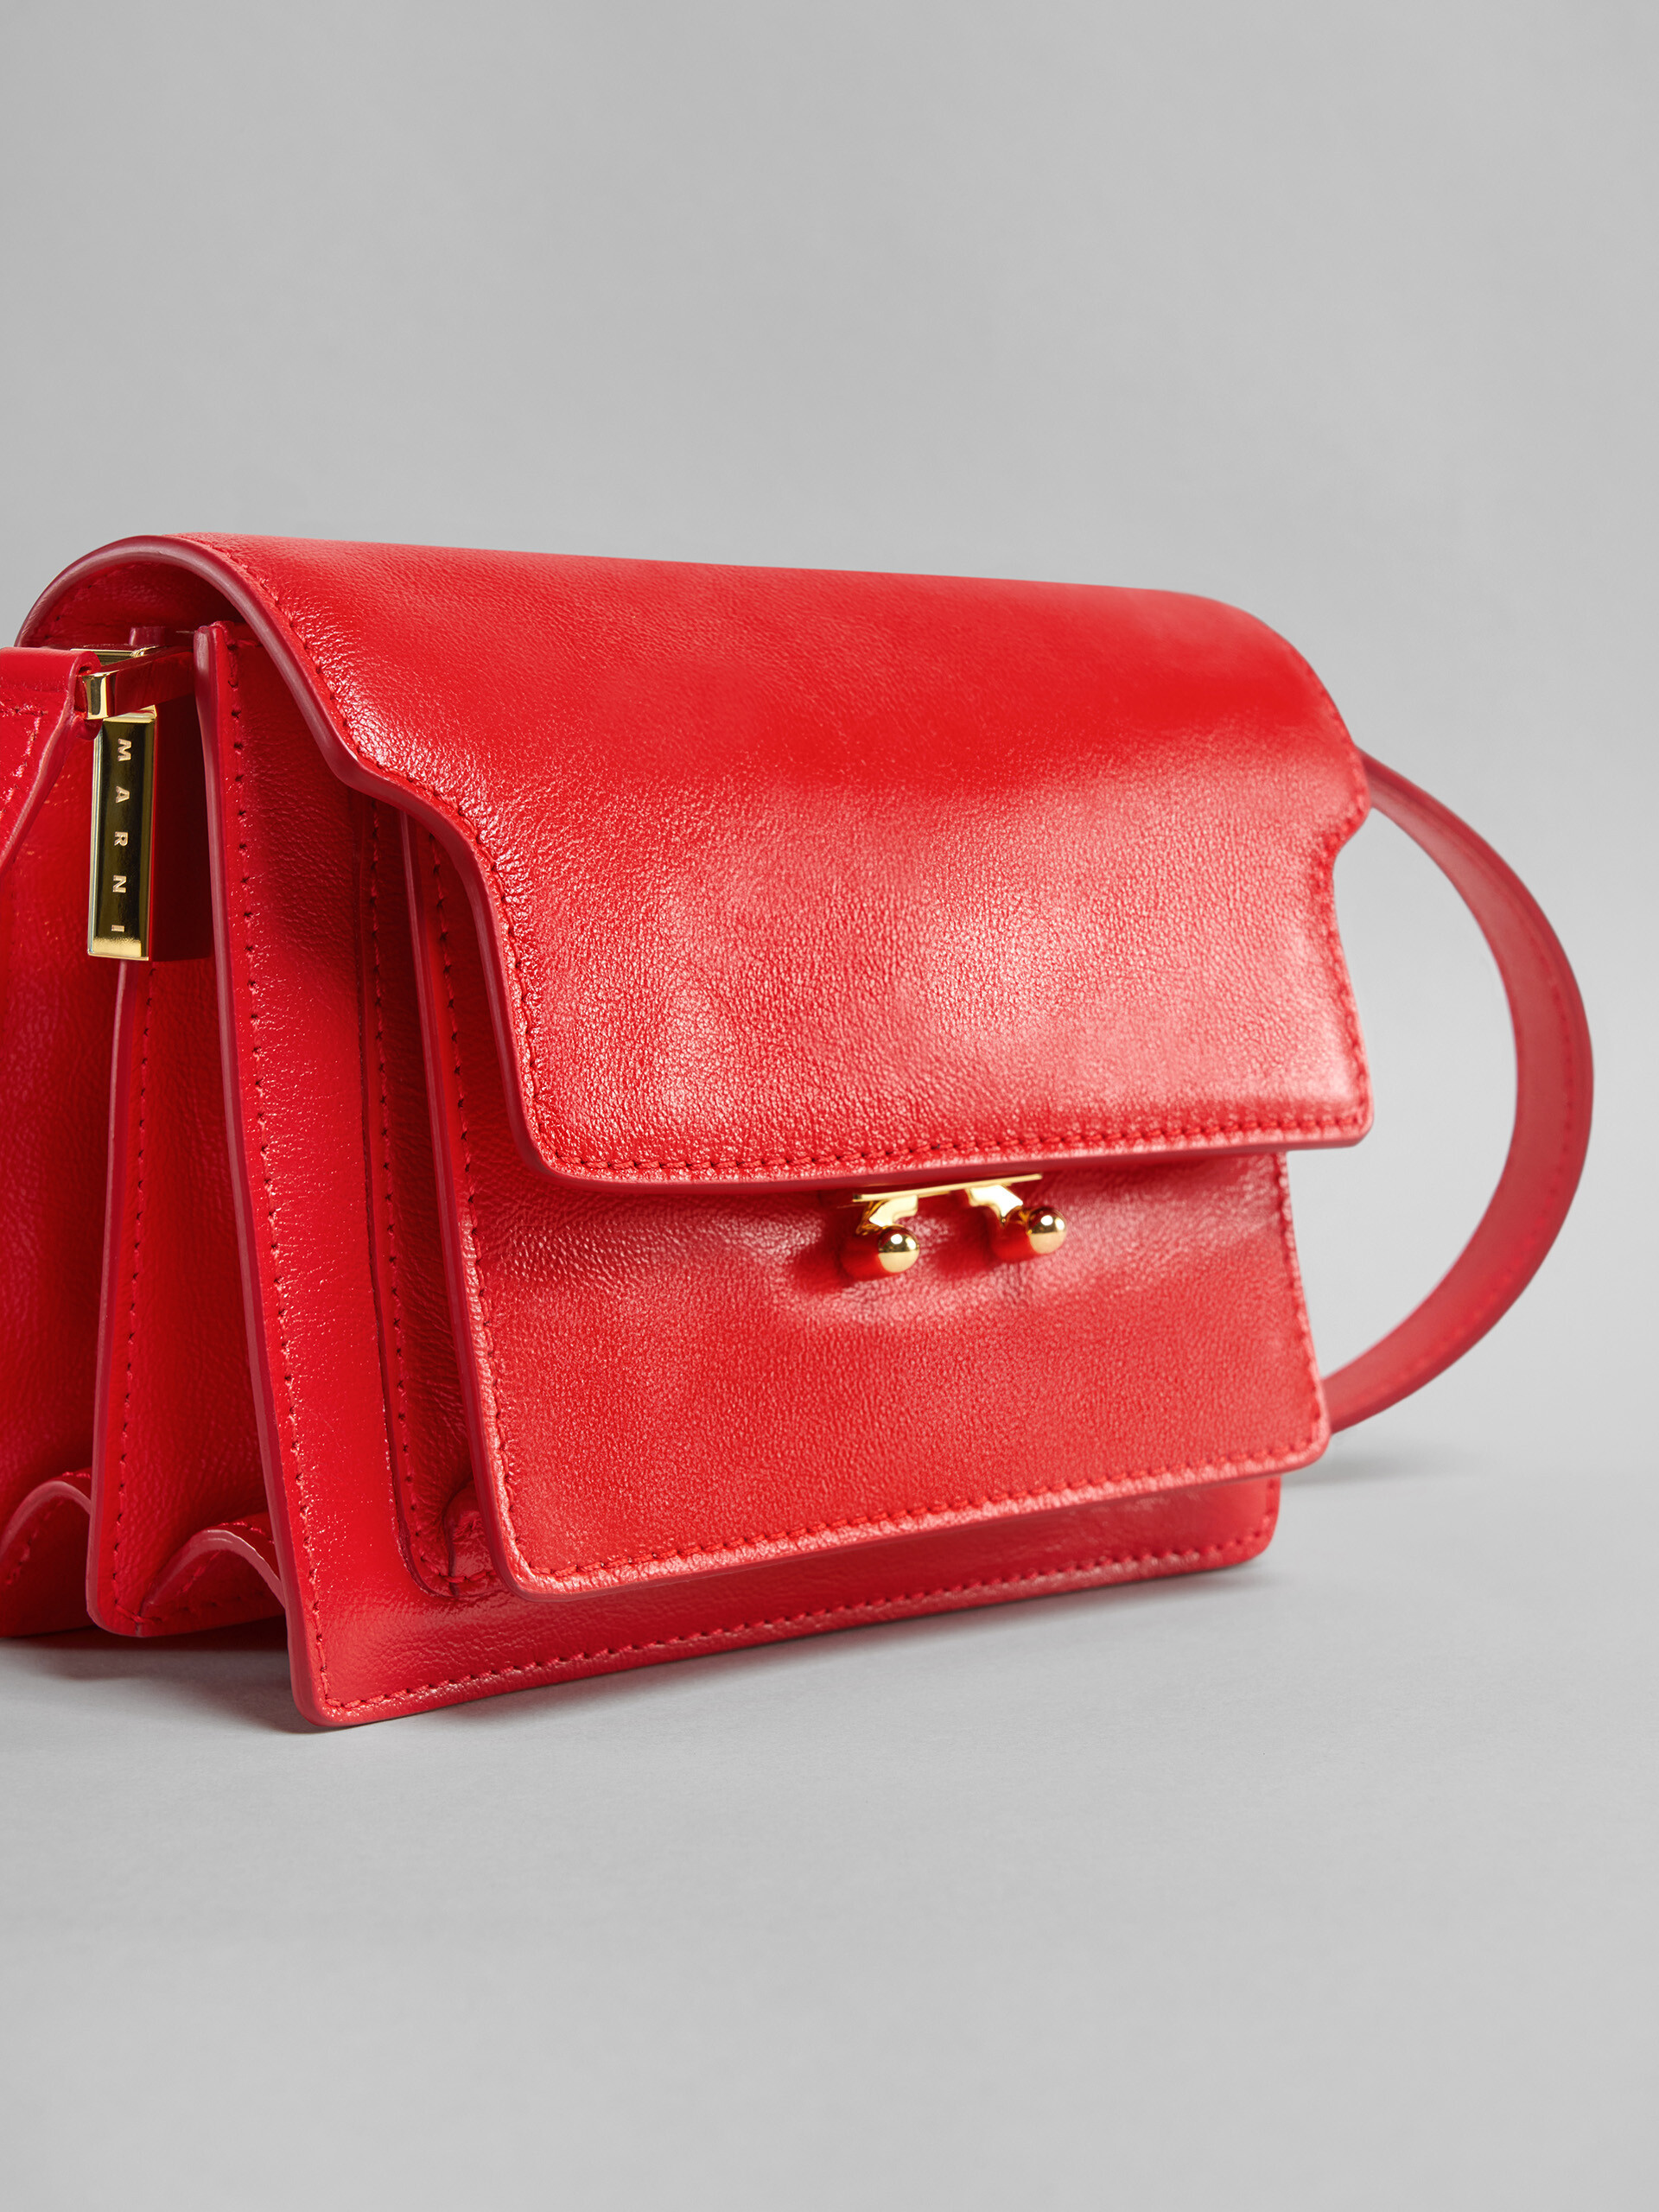 TRUNK SOFT bag mini in pelle rossa - Borse a spalla - Image 5